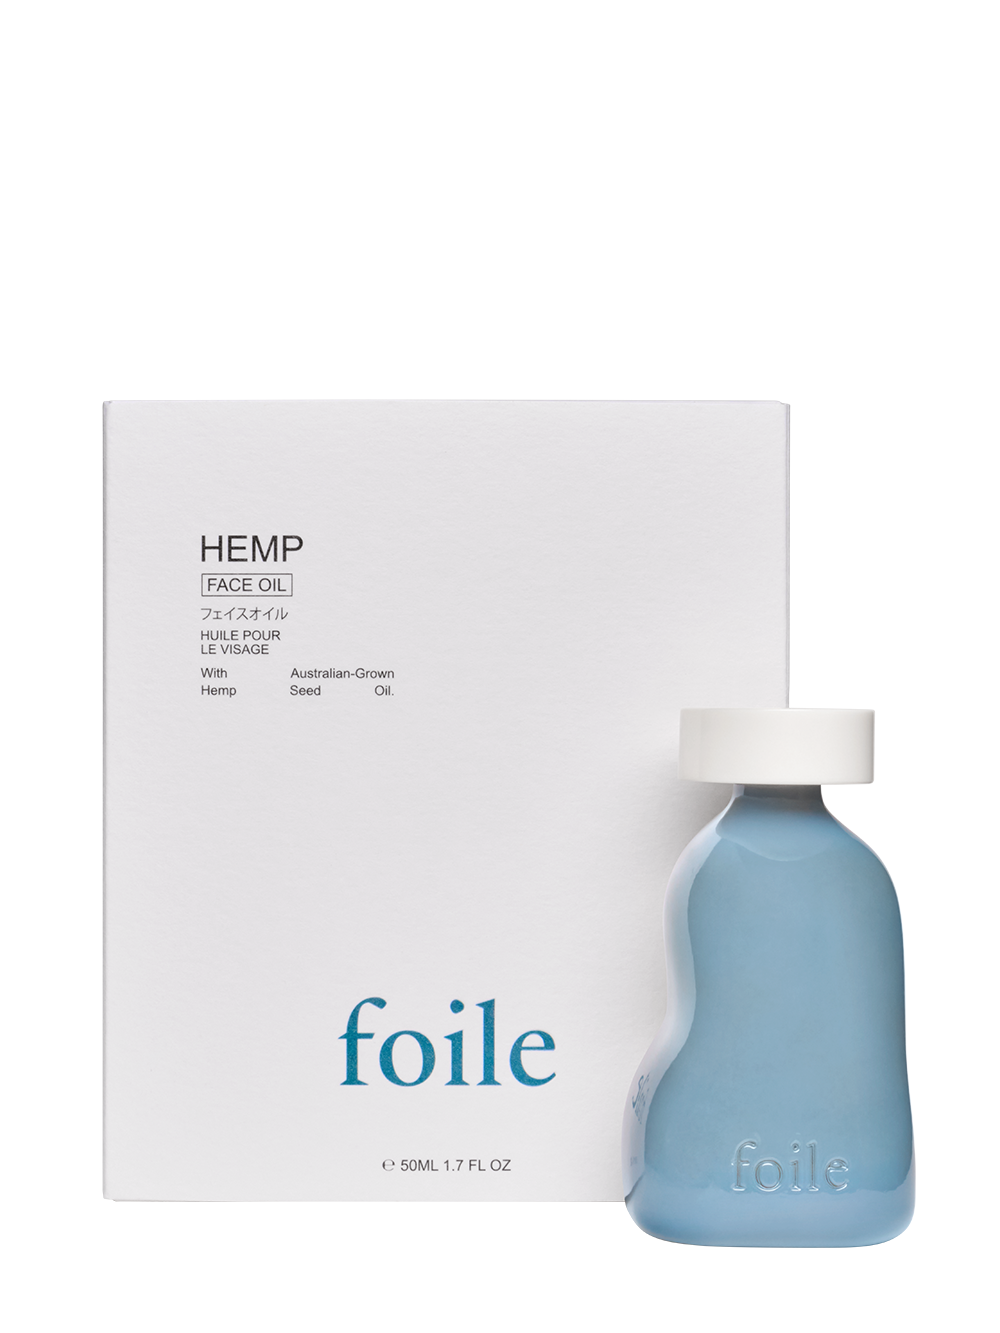 Foile Hemp Face Oil